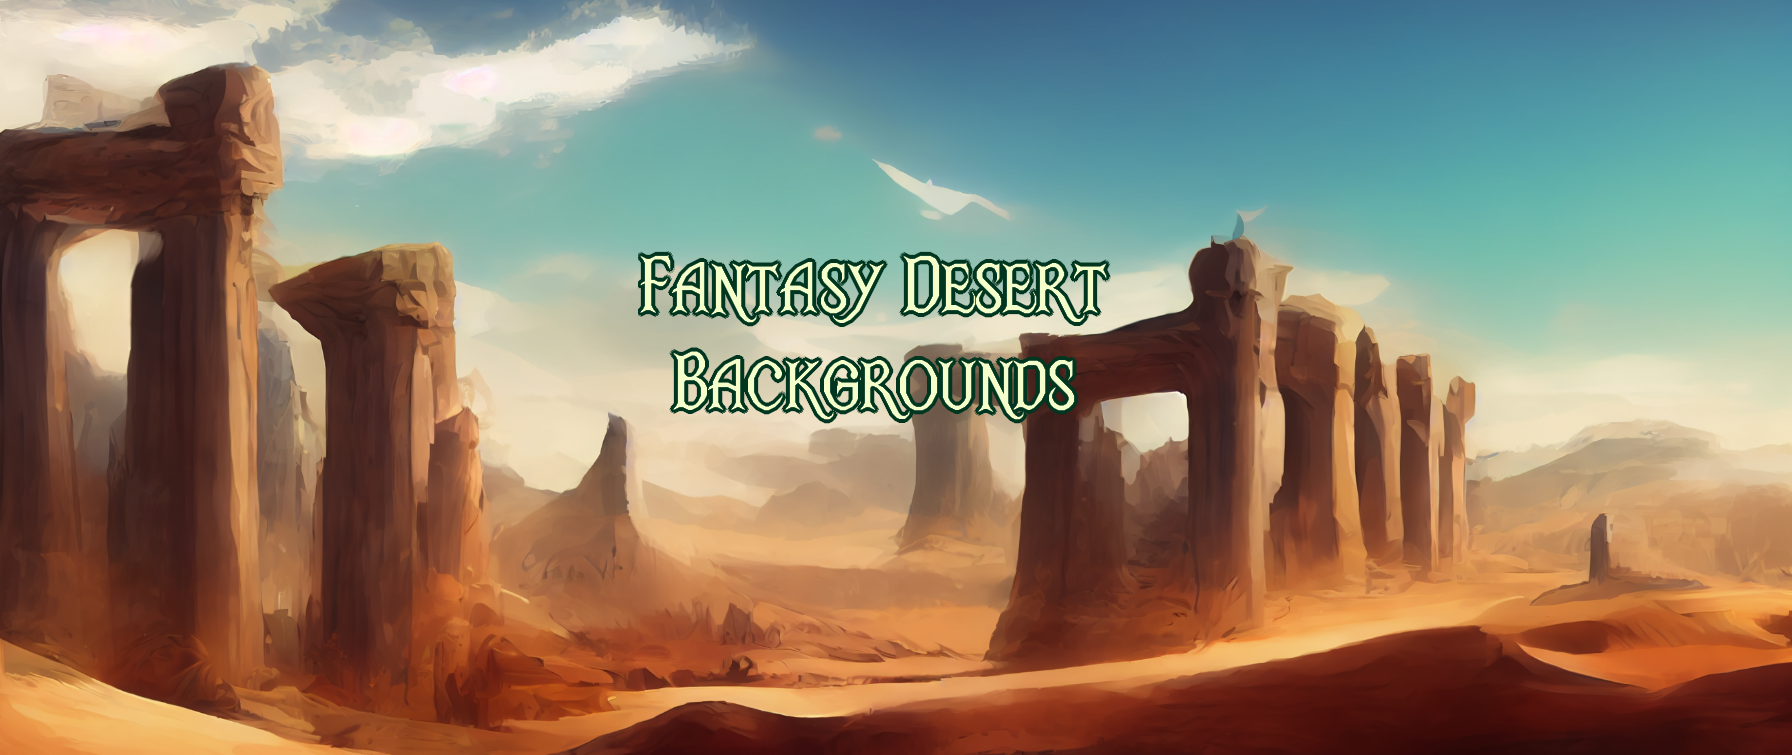 Fantasy Desert Backgrounds